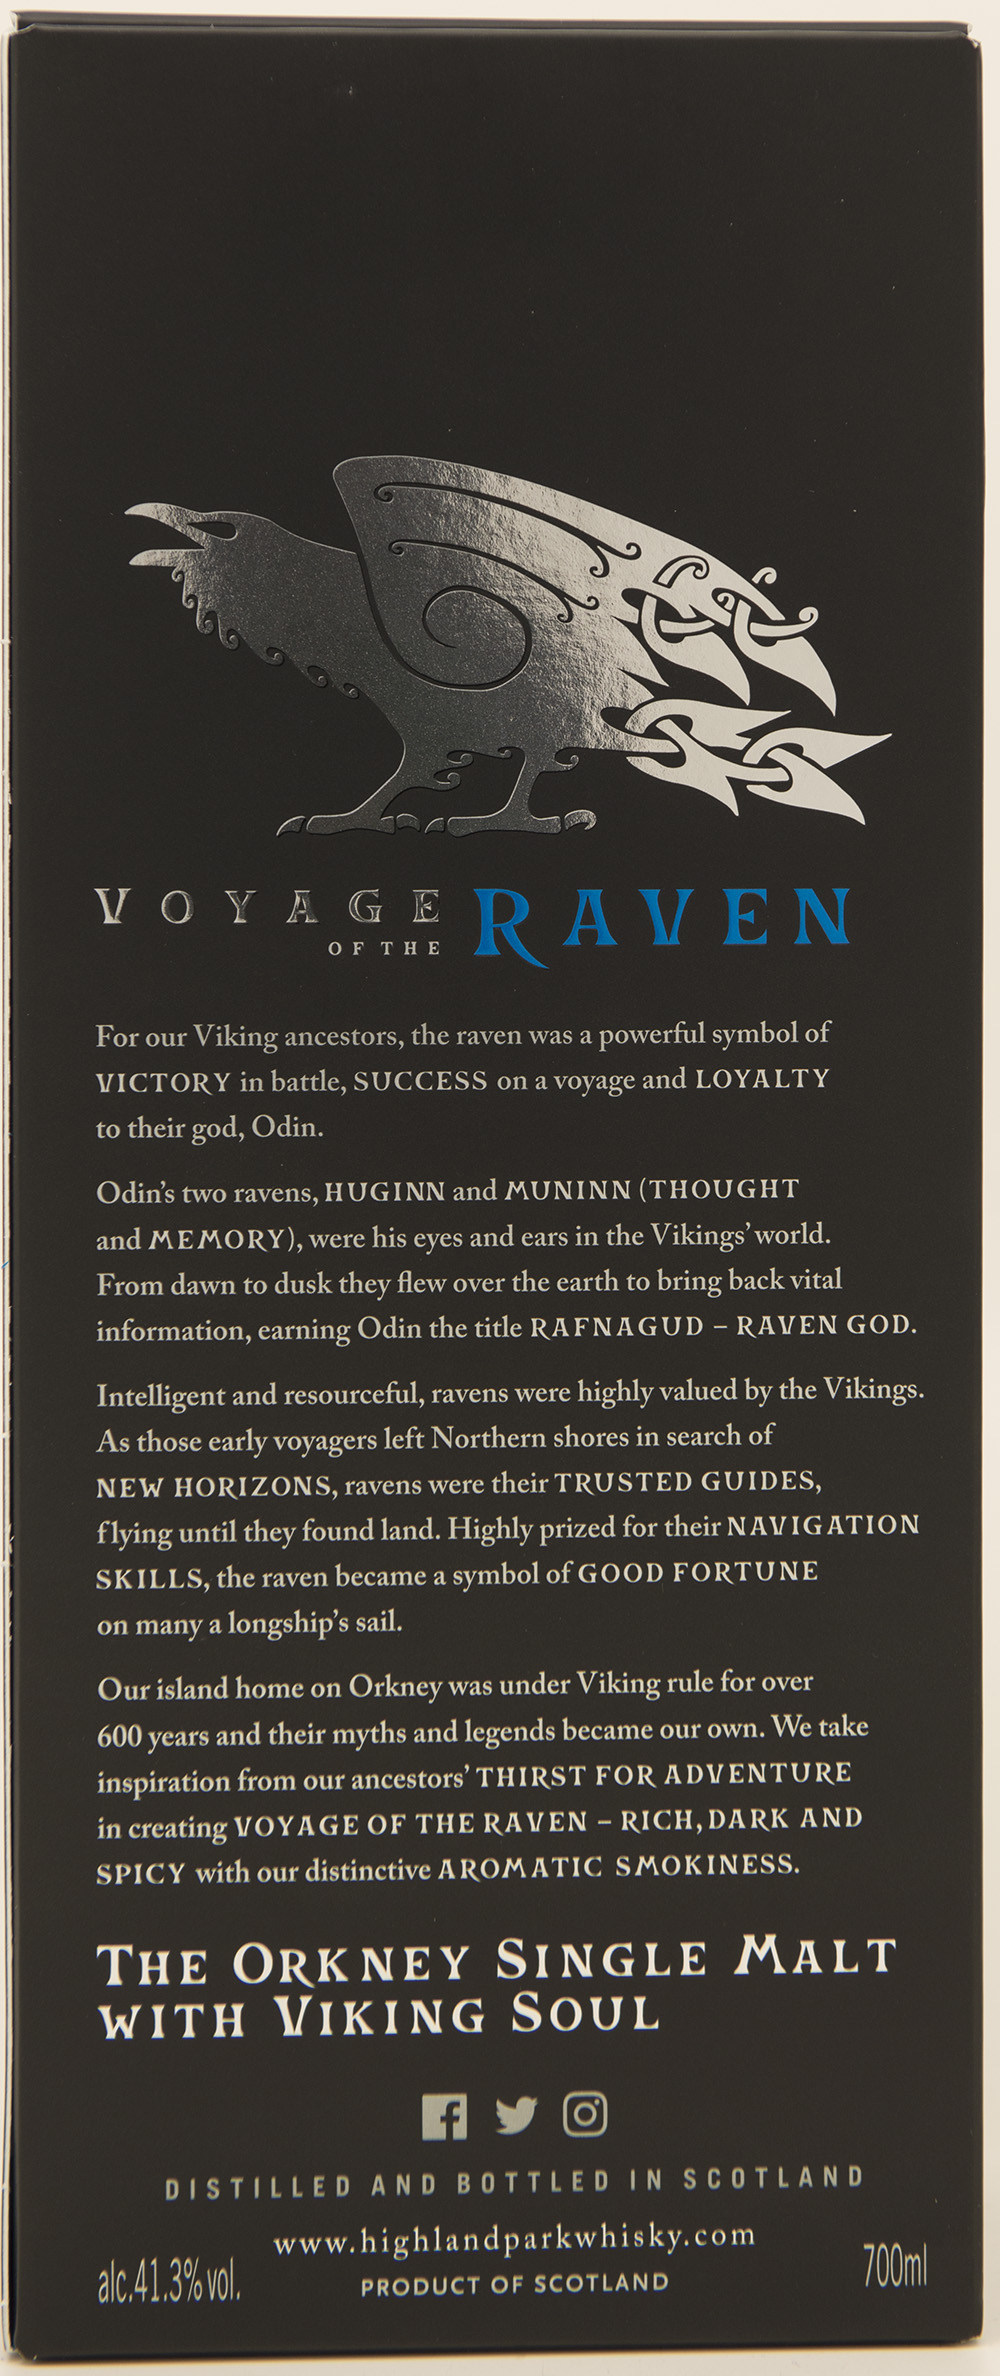 Billede: DSC_3708 - Highland Park - Voyage of the Raven (box back).jpg